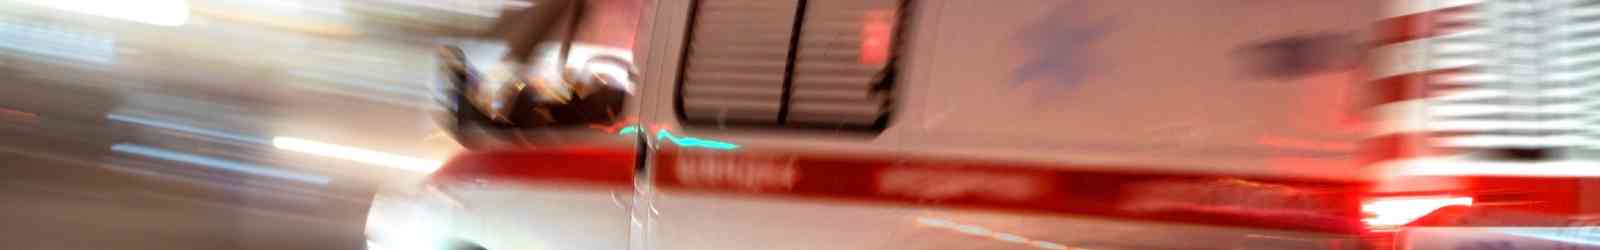 photo of close up ambulance